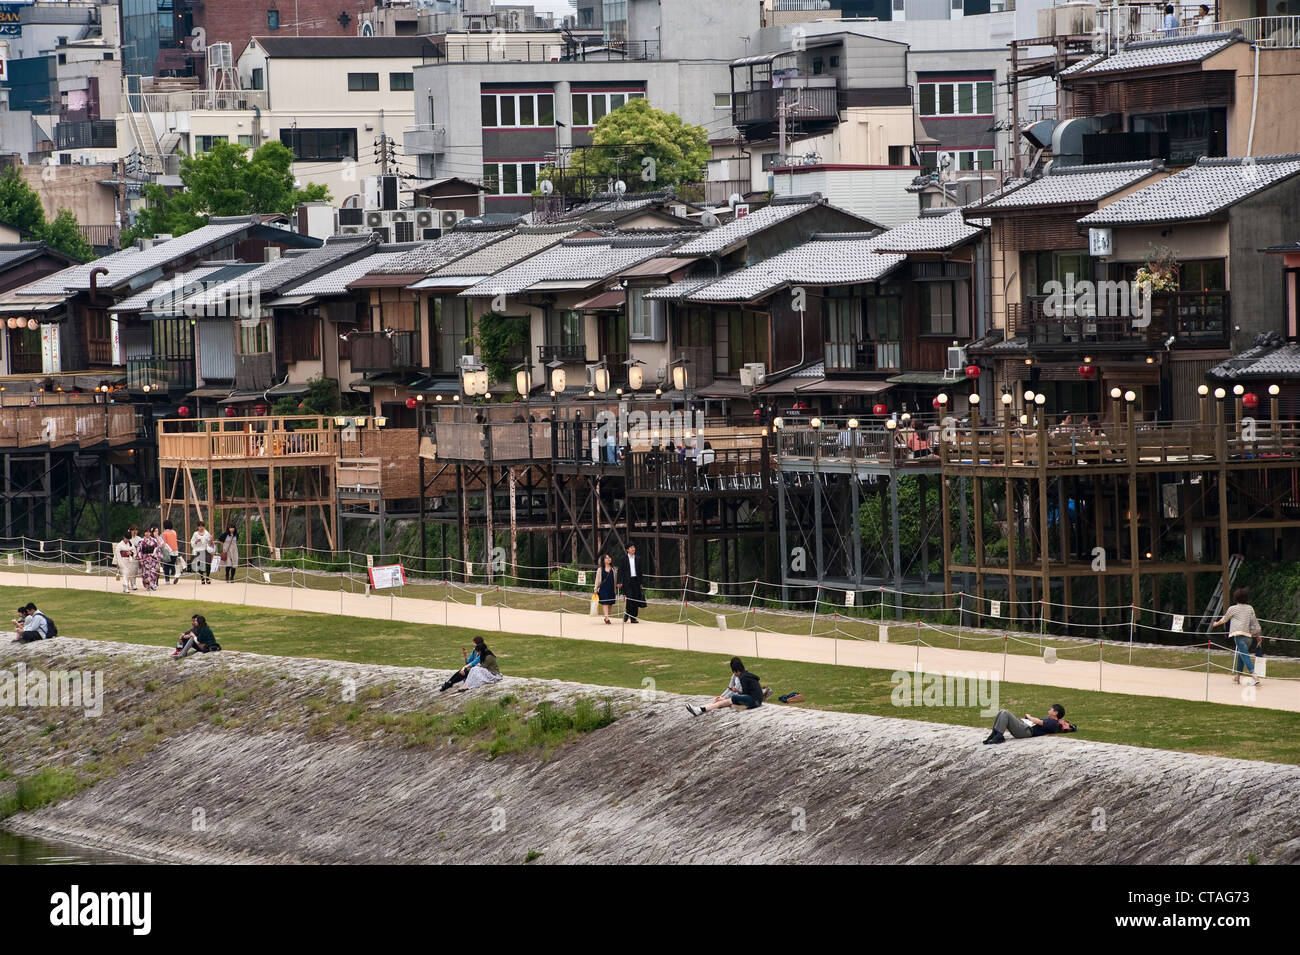 Los restaurantes y las casas tradicionales de madera antigua (machiya) alinean las orillas del río Kamo en el centro de Kioto, Japón Foto de stock